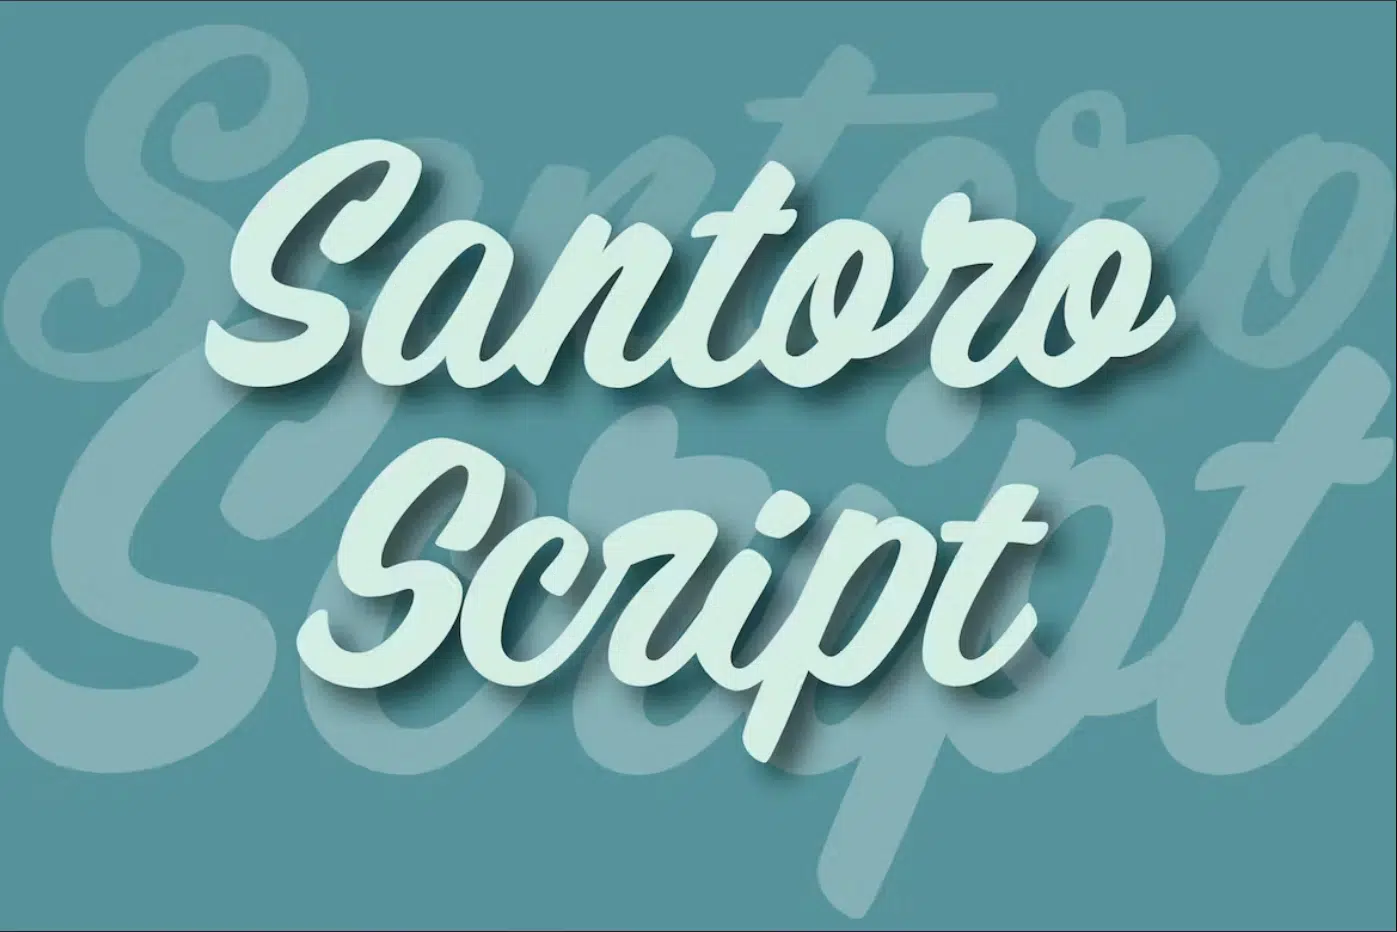 Santoro Script